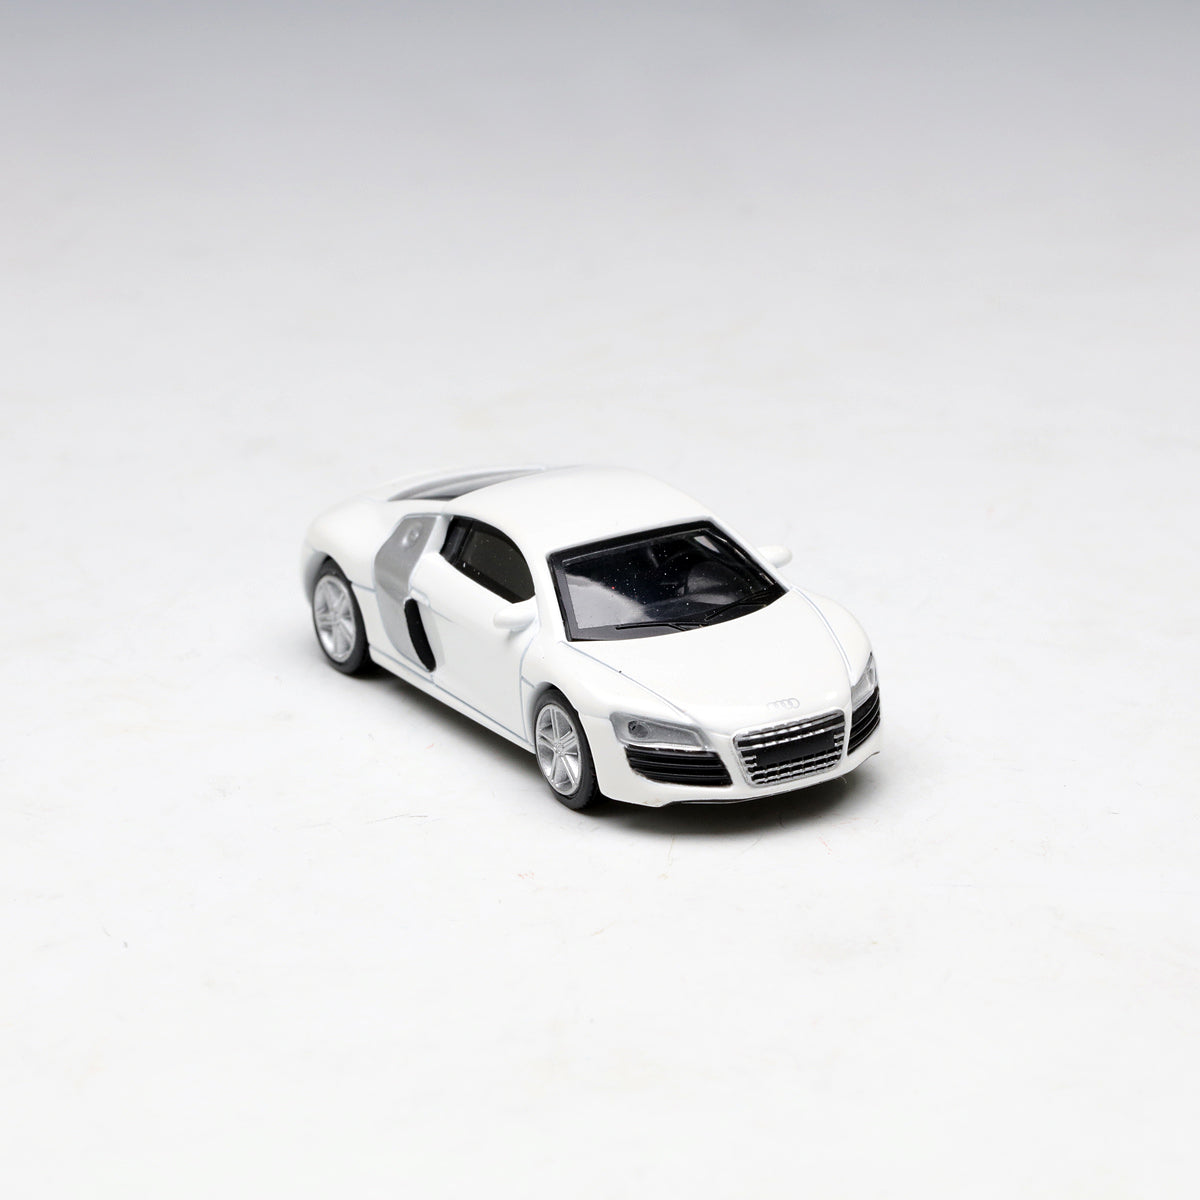 Schuco 1:64 Audi R8 coupe white 452010800